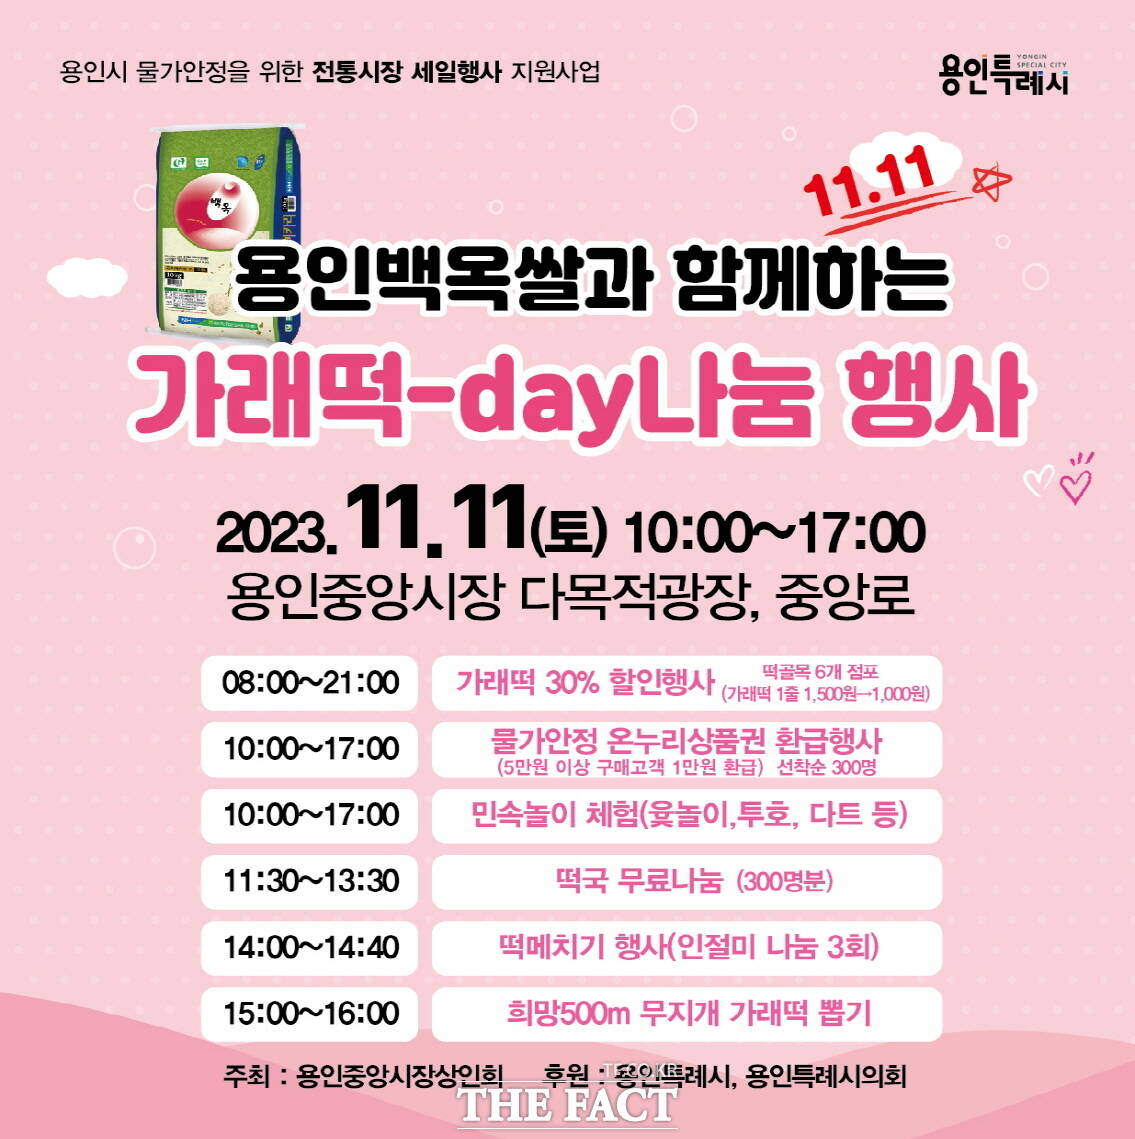 용인중앙시장 가래떡데이 나눔 행사 홍보 포스터/용인시